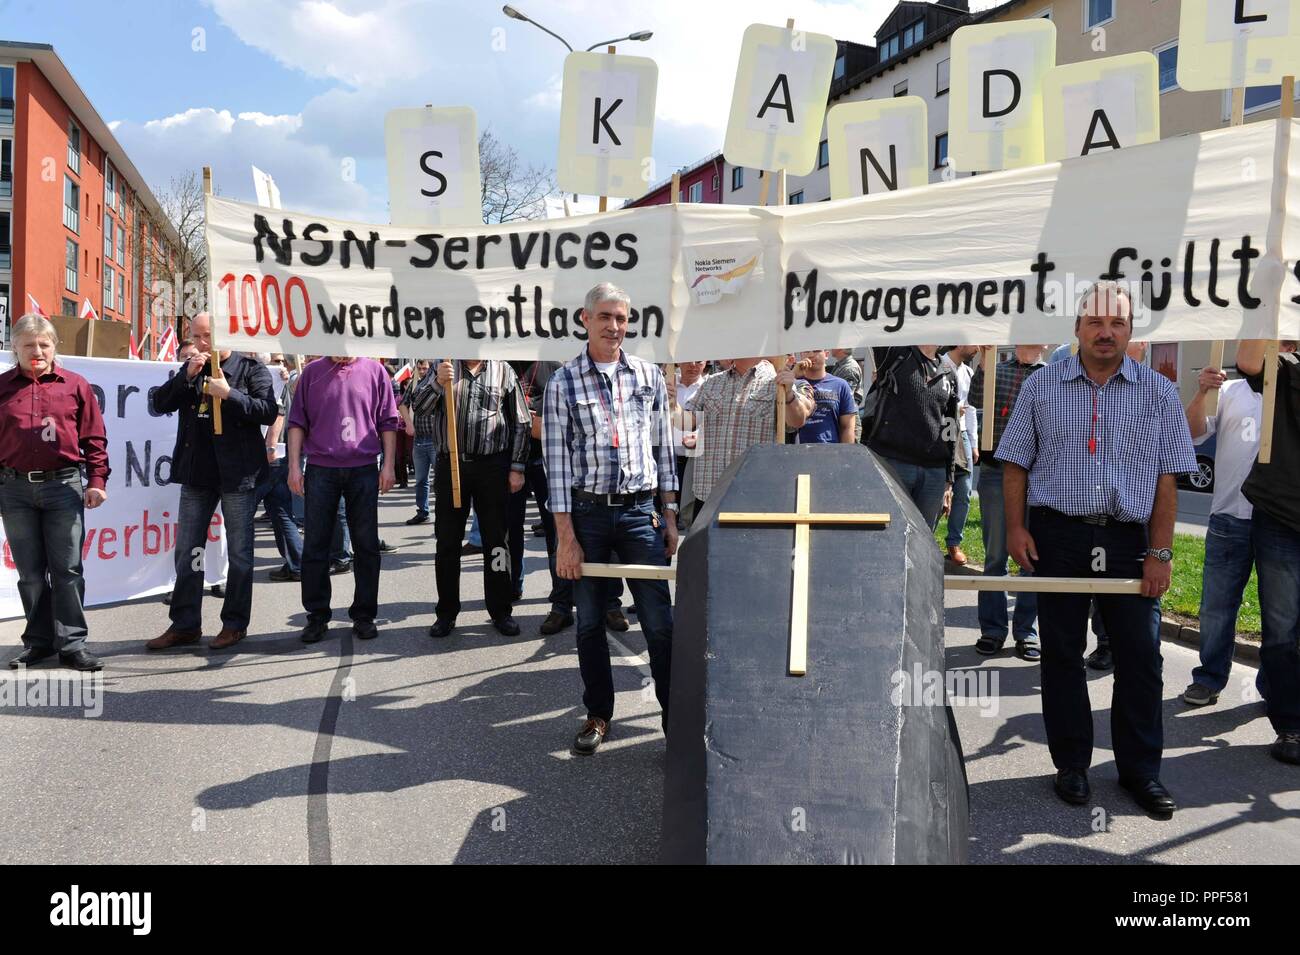 Le syndicat Verdi a appelé à protester contre le projet de fermeture de site lors d'une réunion du personnel à Nokia Siemens Networks (NSN). La photo montre les participants d'une manifestation de protestation au siège de l'German-Finnish joint venture. Banque D'Images